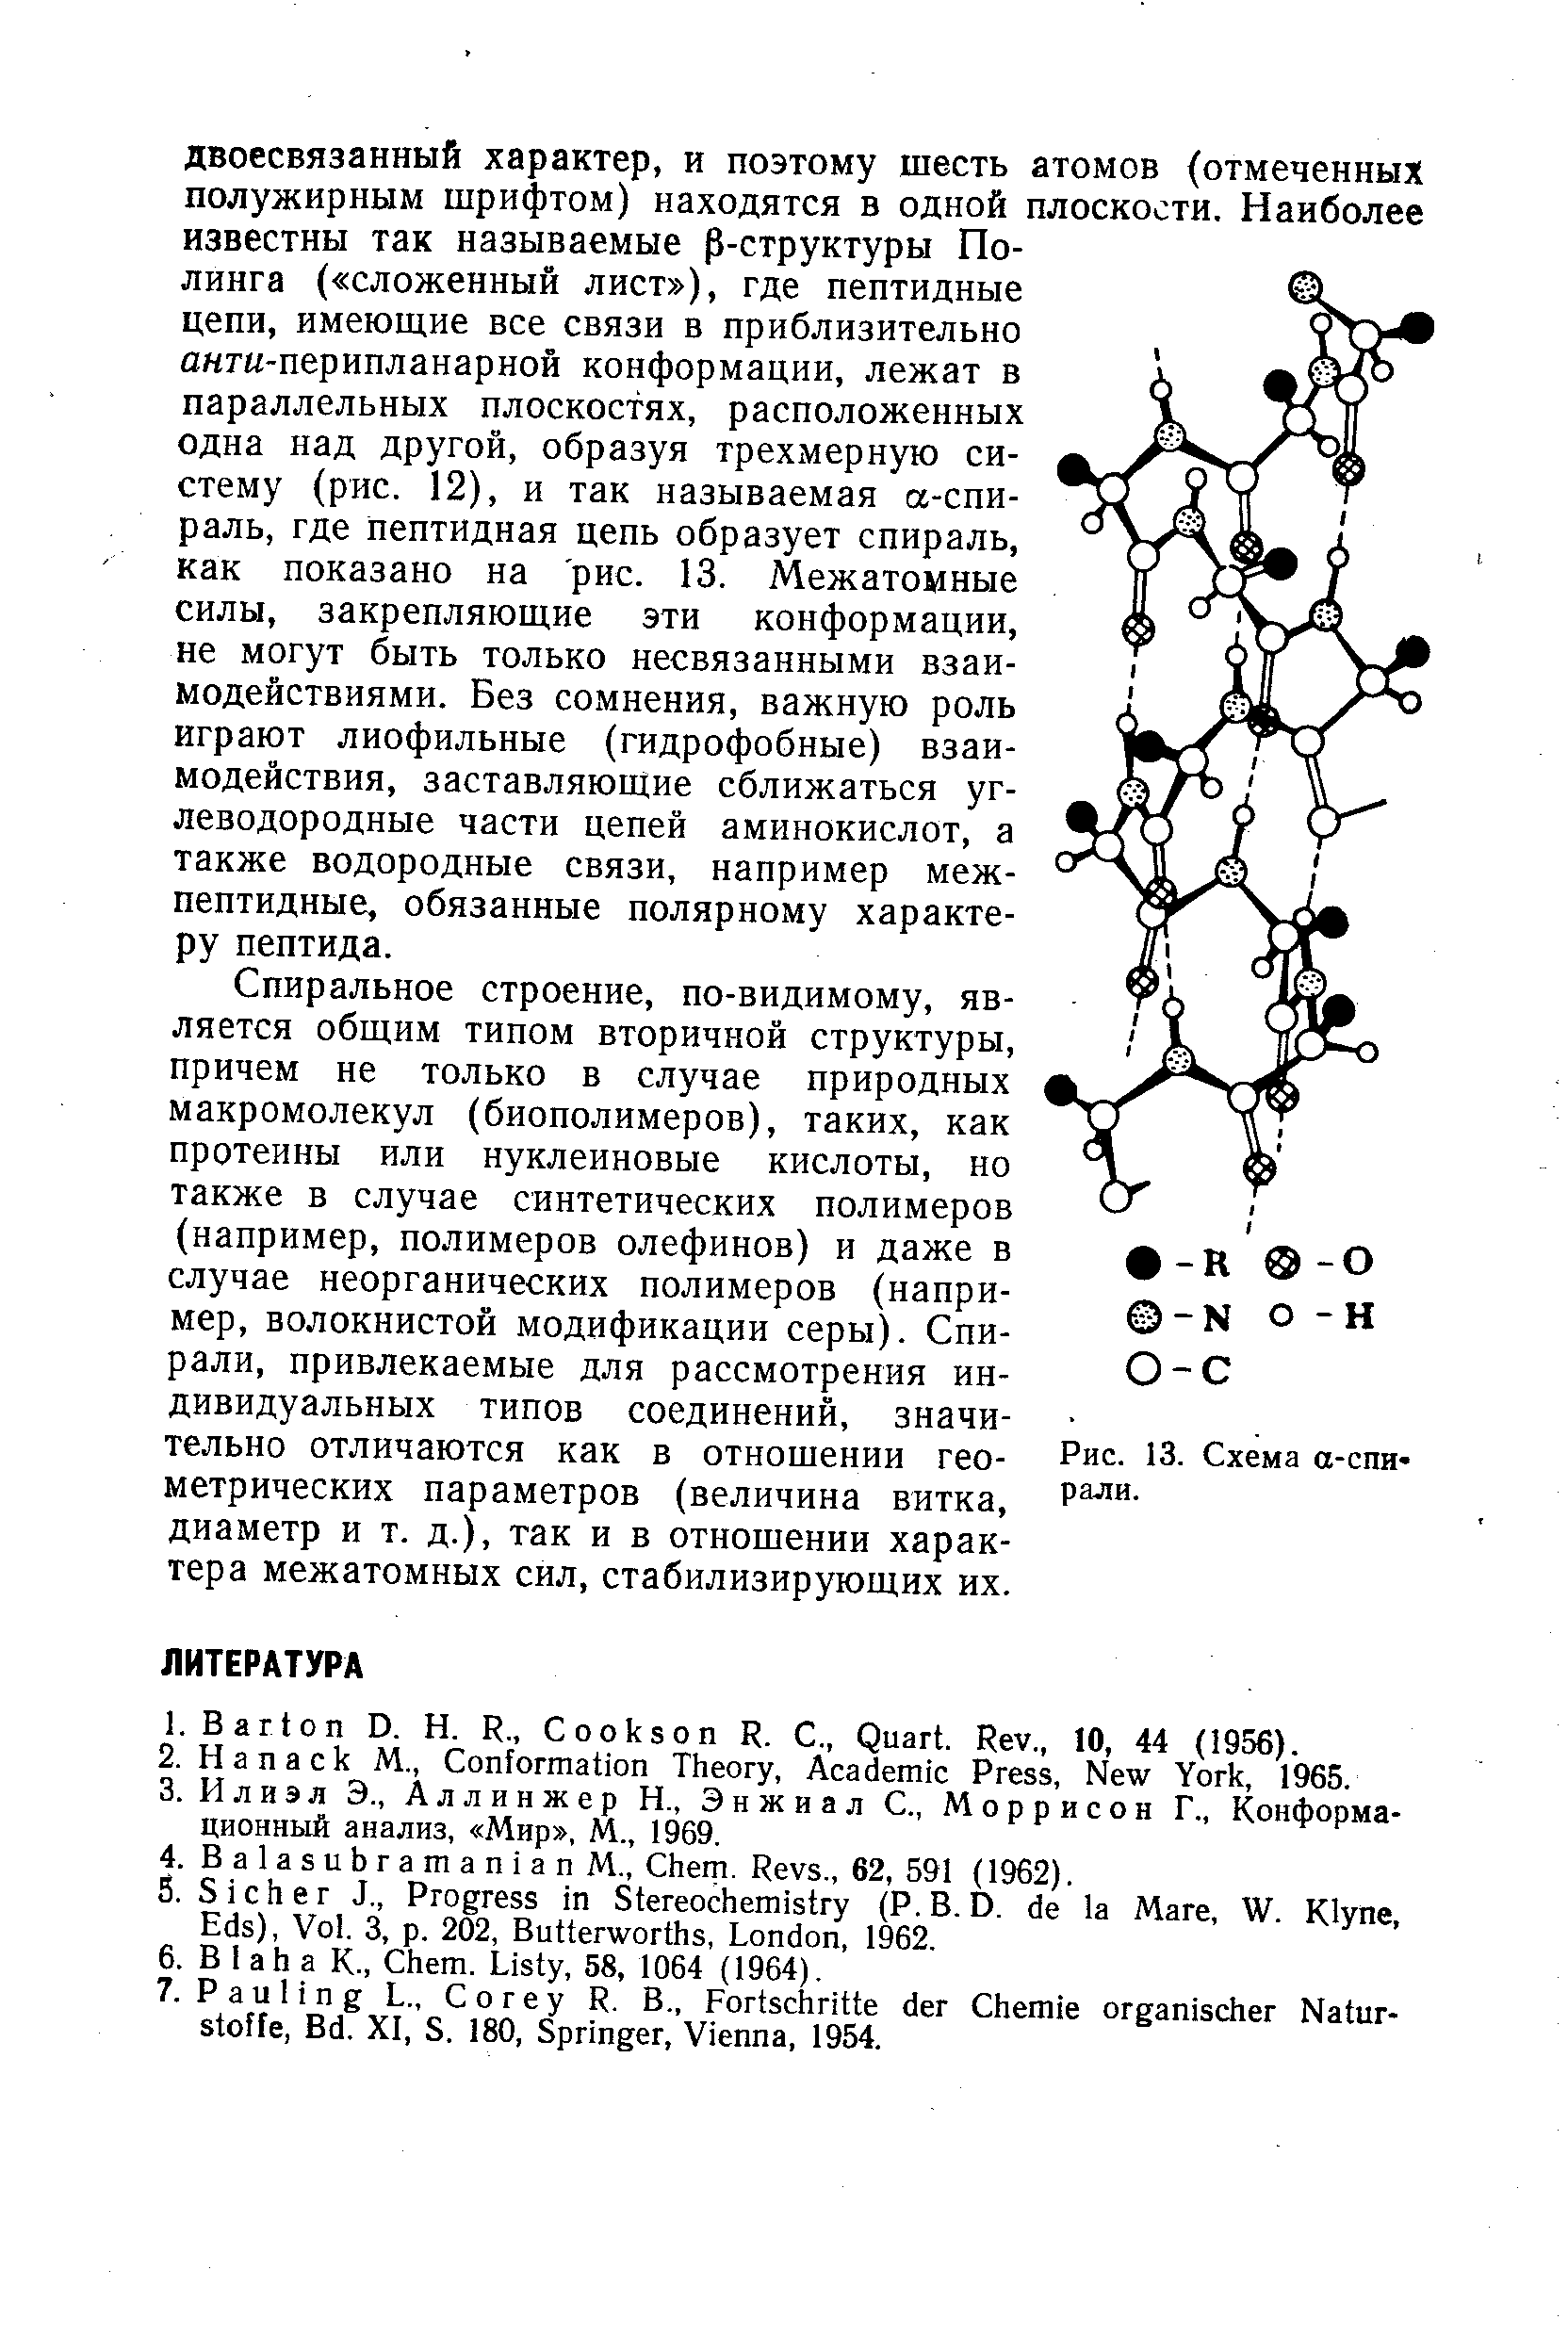 Спиральное строение, по-видимому, является общим типом вторичной структуры, причем не только в случае природных макромолекул (биополимеров), таких, как протеины или нуклеиновые кислоты, но также в случае синтетических полимеров (например, полимеров олефинов) и даже в случае неорганических полимеров (например, волокнистой модификации серы). Спирали, привлекаемые для рассмотрения индивидуальных типов соединений, значительно отличаются как в отношении геометрических параметров (величина витка, диаметр и т. д.), так и в отношении характера межатомных сил, стабилизирующих их.